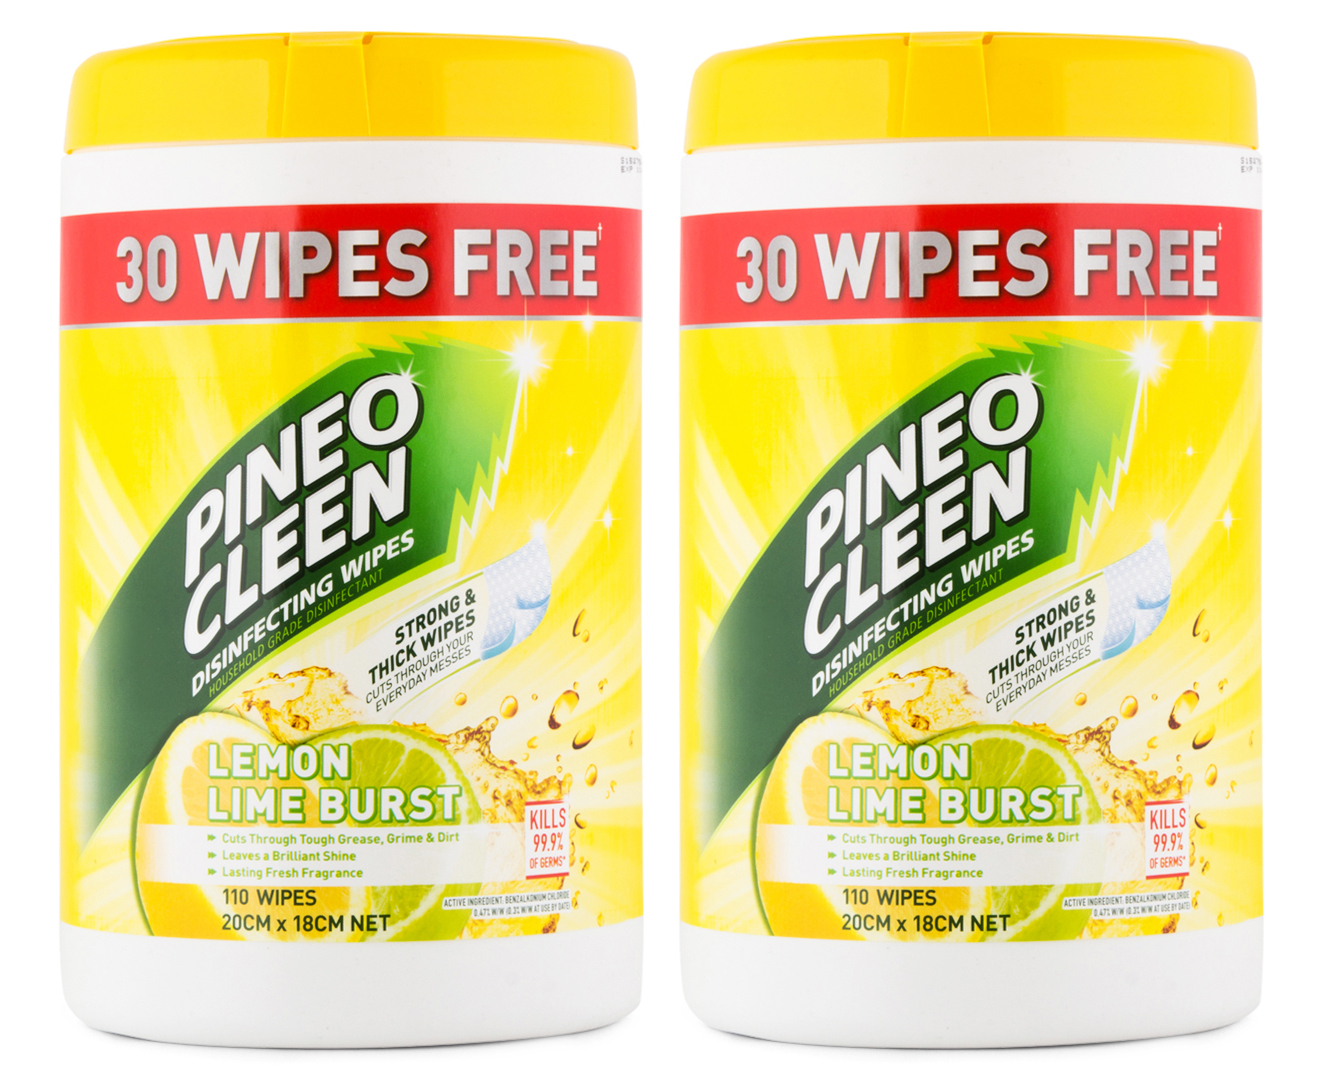 2 x Pine O Cleen Disinfecting Wipes Lemon Lime Burst 110pk